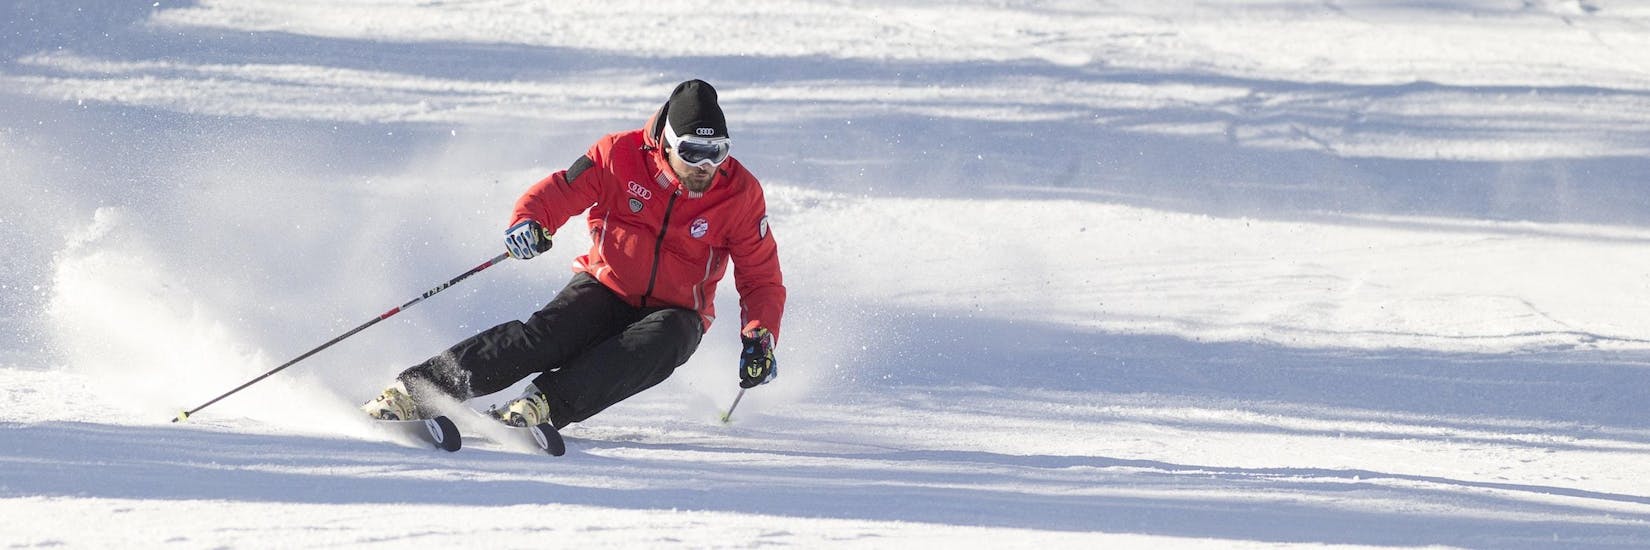 Un moniteur de ski de la Scuola Sci Cortina montre la bonne technique de ski pendant l'un des cours particuliers de ski pour adultes - tous niveaux dans la station de ski de Cortina d'Ampezzo.